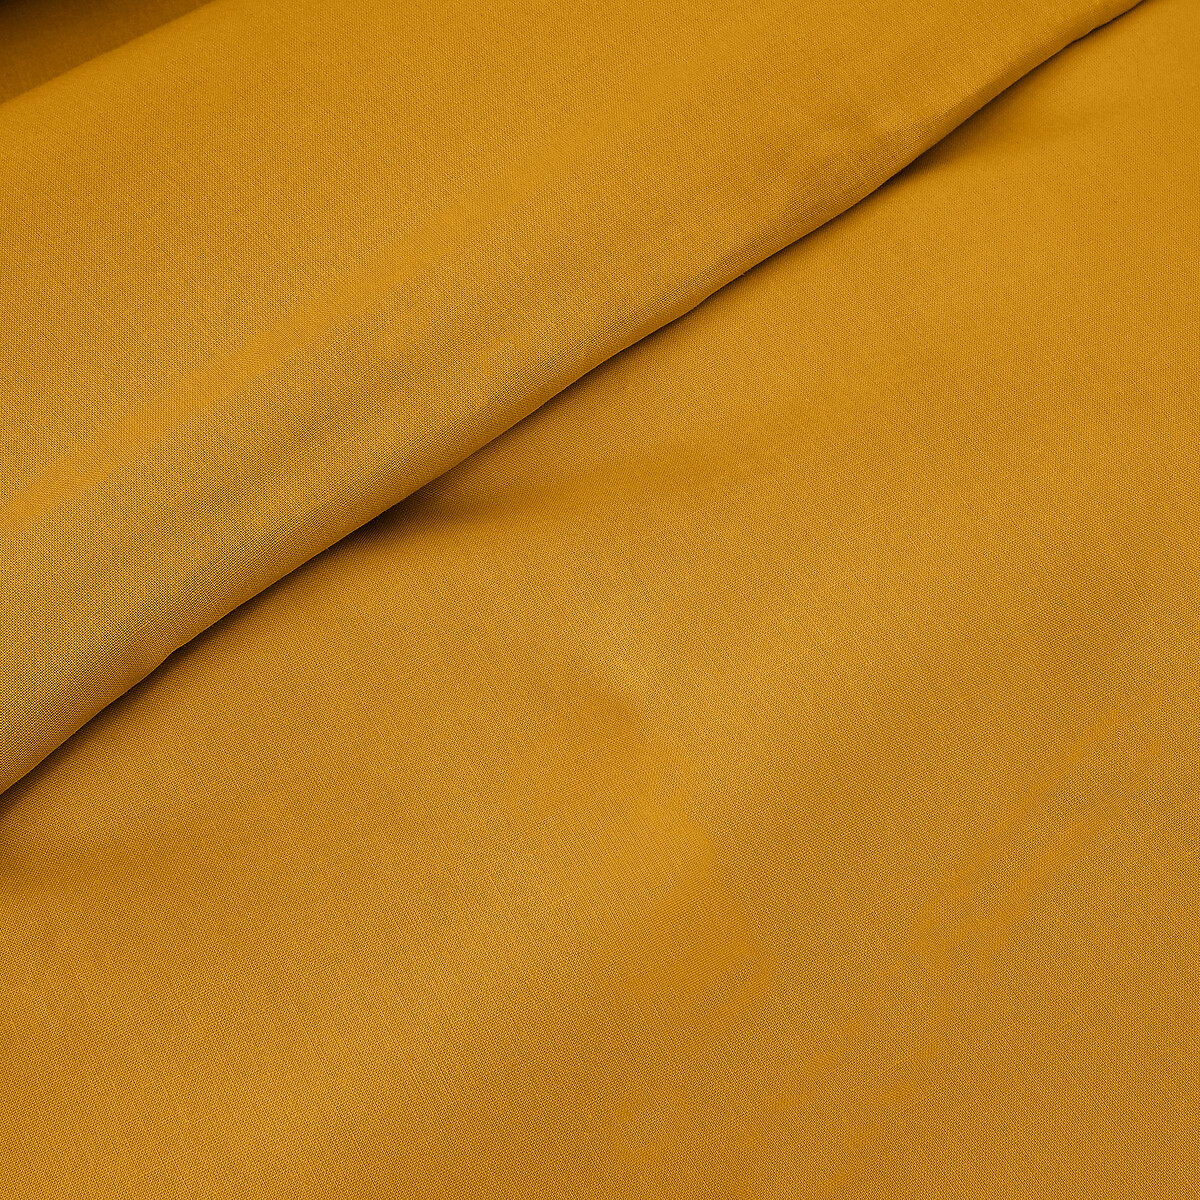 Пододеяльник Из хлопка на детскую кроватку Scenario 140 x 150 см желтый LaRedoute, размер 140 x 150 см - фото 2